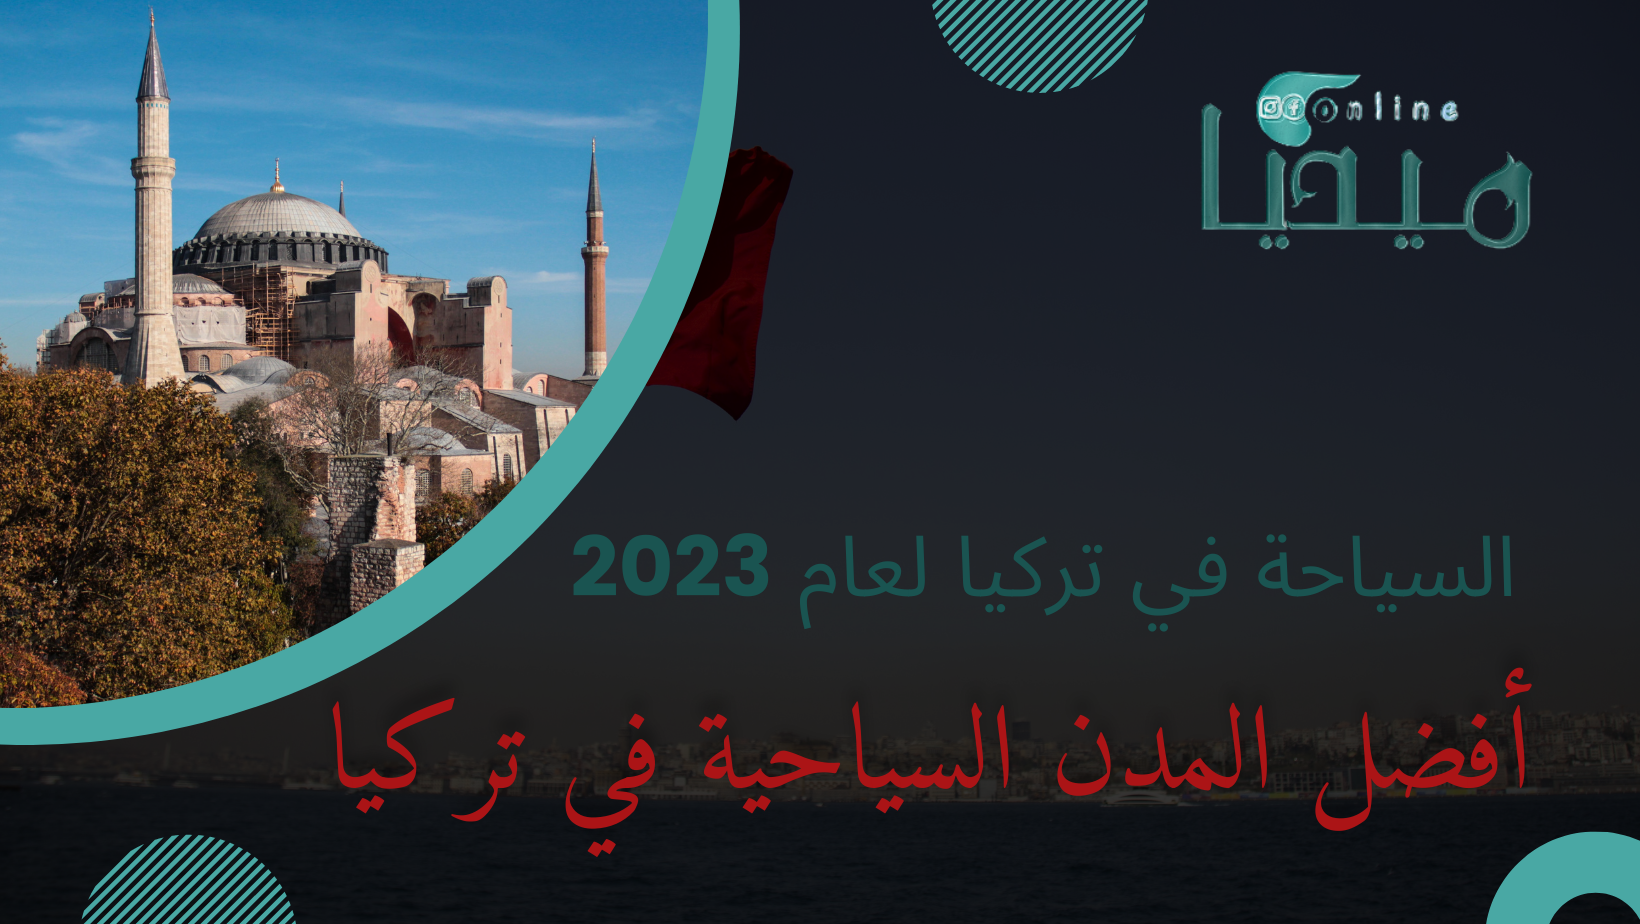 السياحة في تركيا لعام 2023